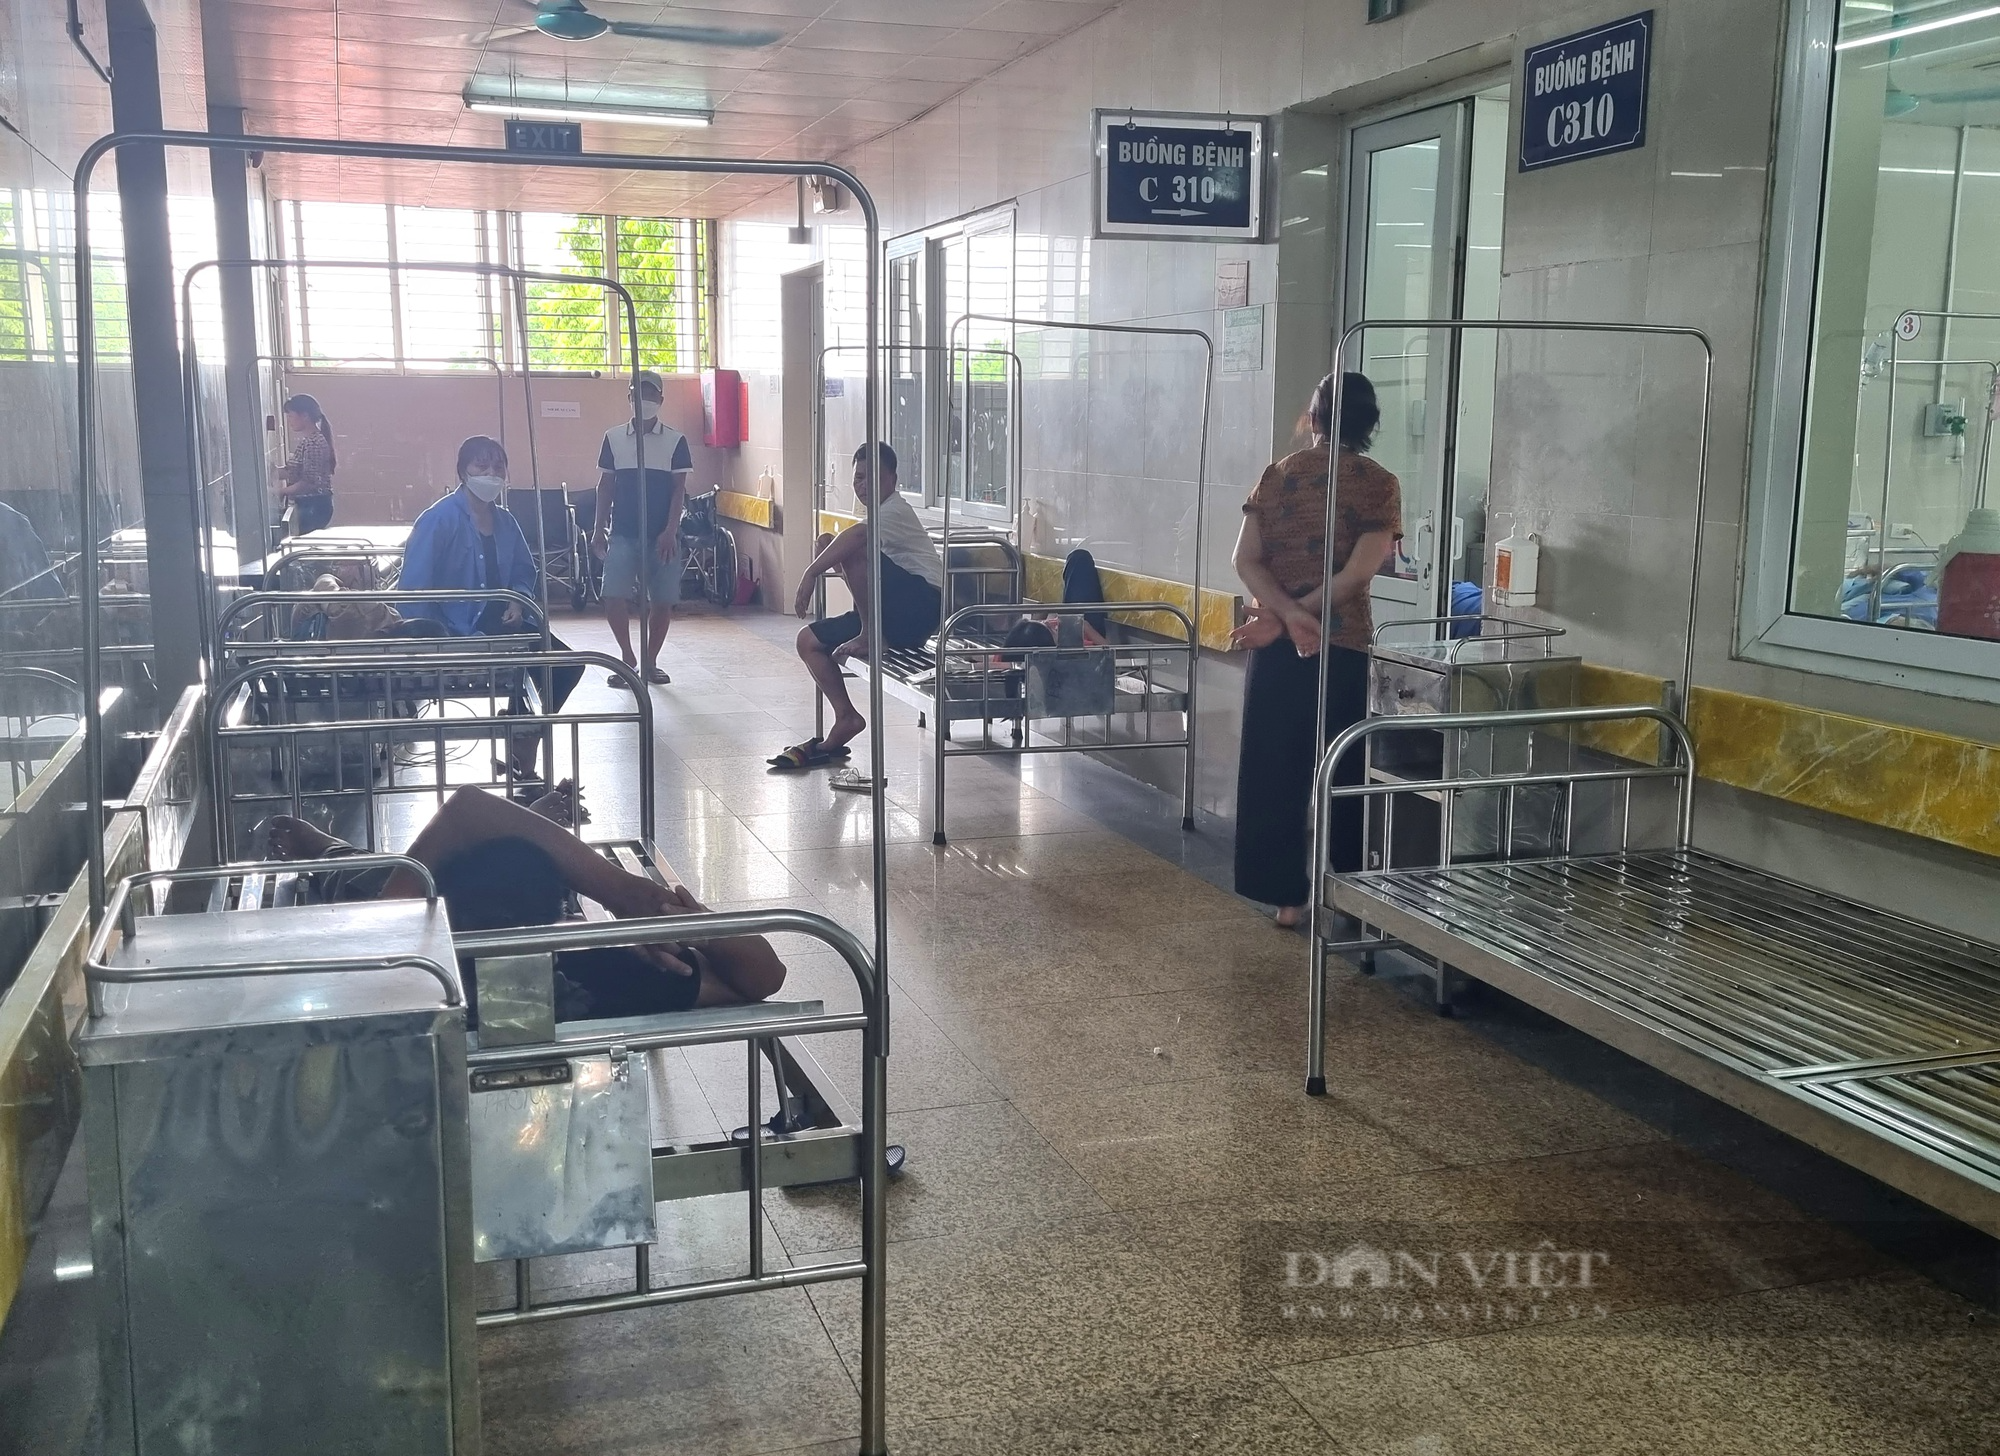 Bệnh viện Đa khoa tỉnh Ninh Bình ghi nhận lượng người nhập viện tăng cao - Ảnh 6.